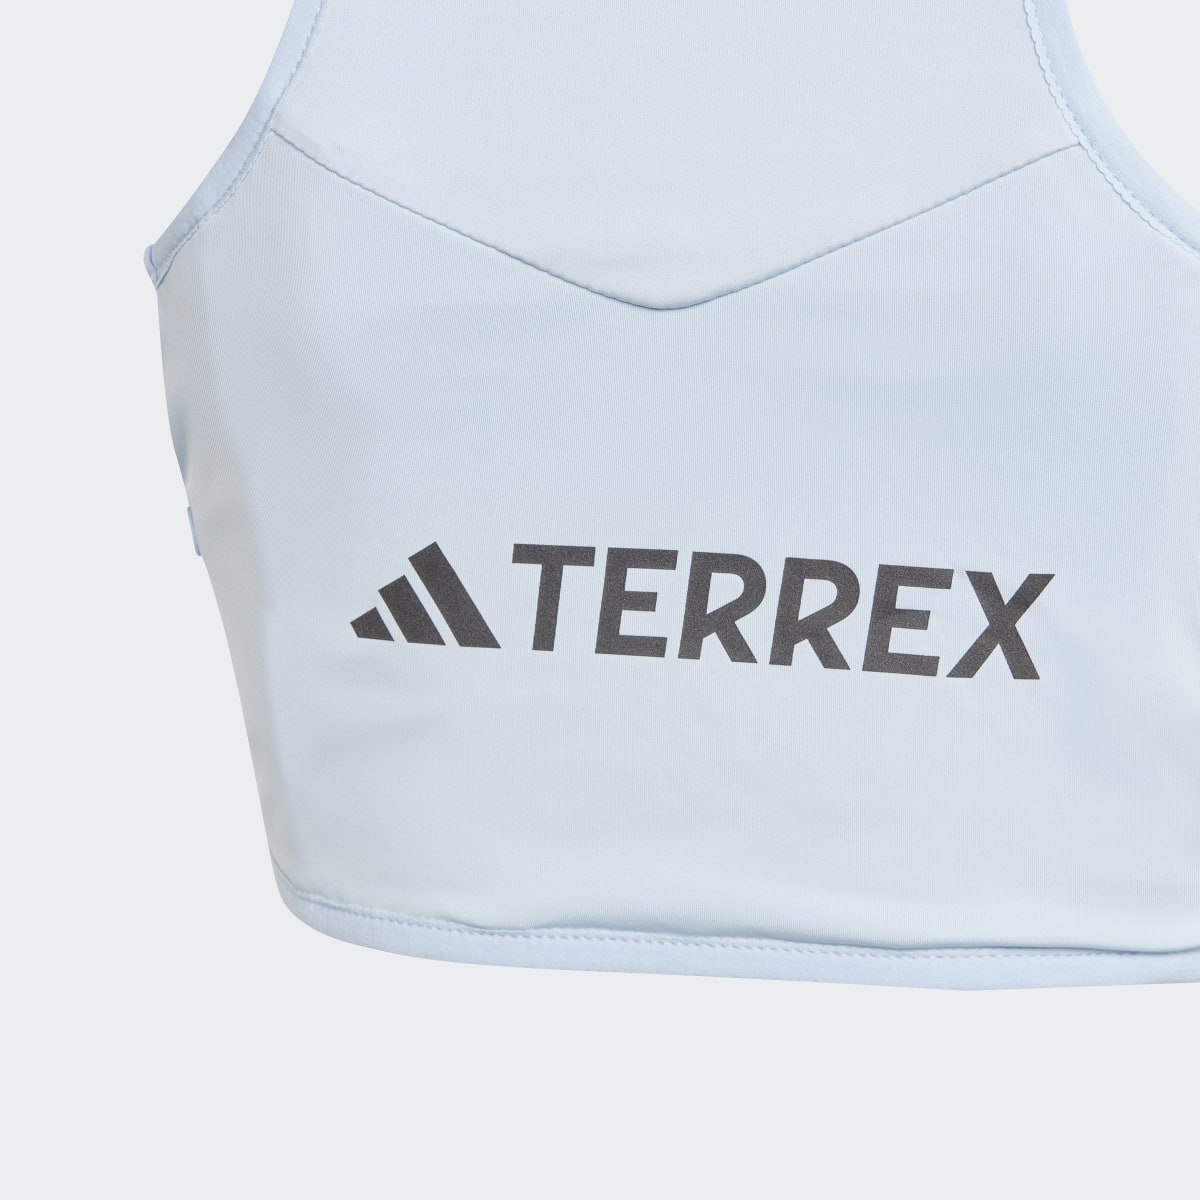 Adidas Terrex Trail Running Vest. 4